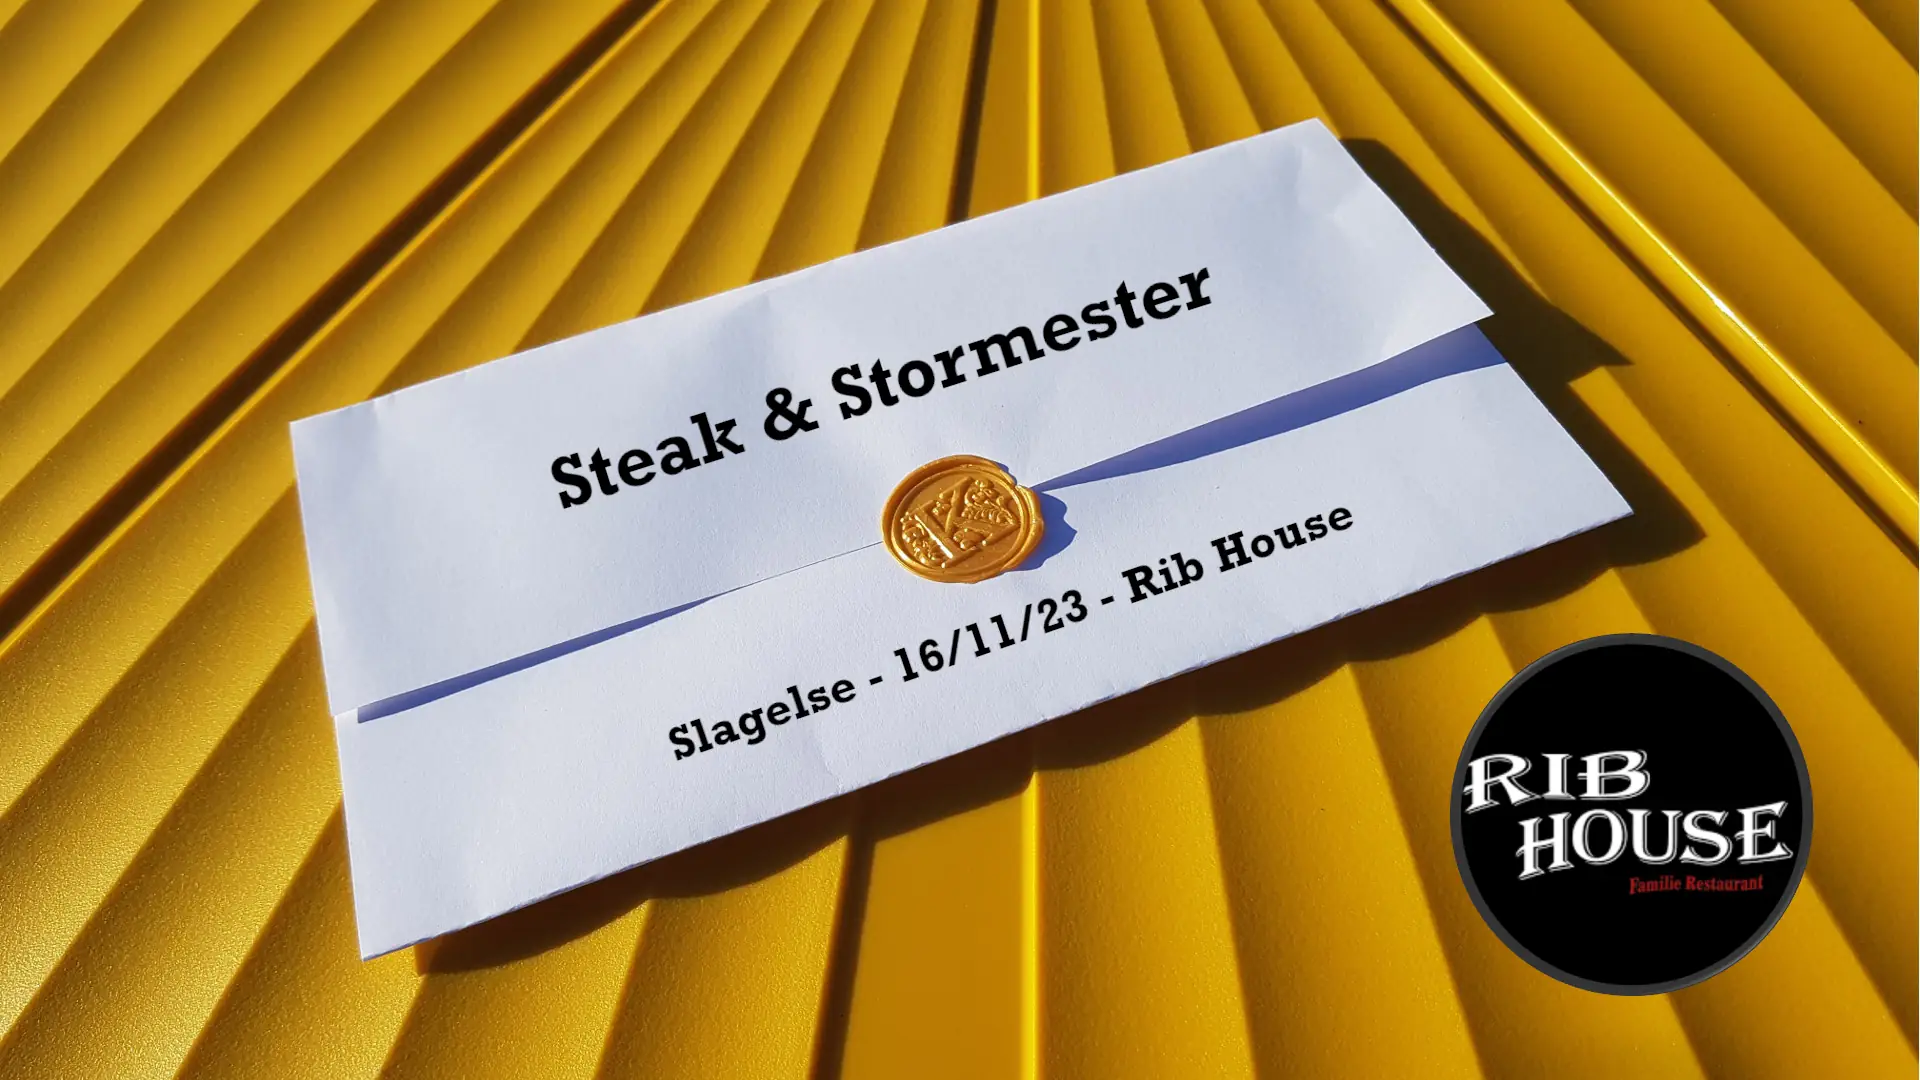 KollegaKompagniet og Rib House Slagelse inviterer til "Steak & Stormester" torsdag d. 16. november 2023.